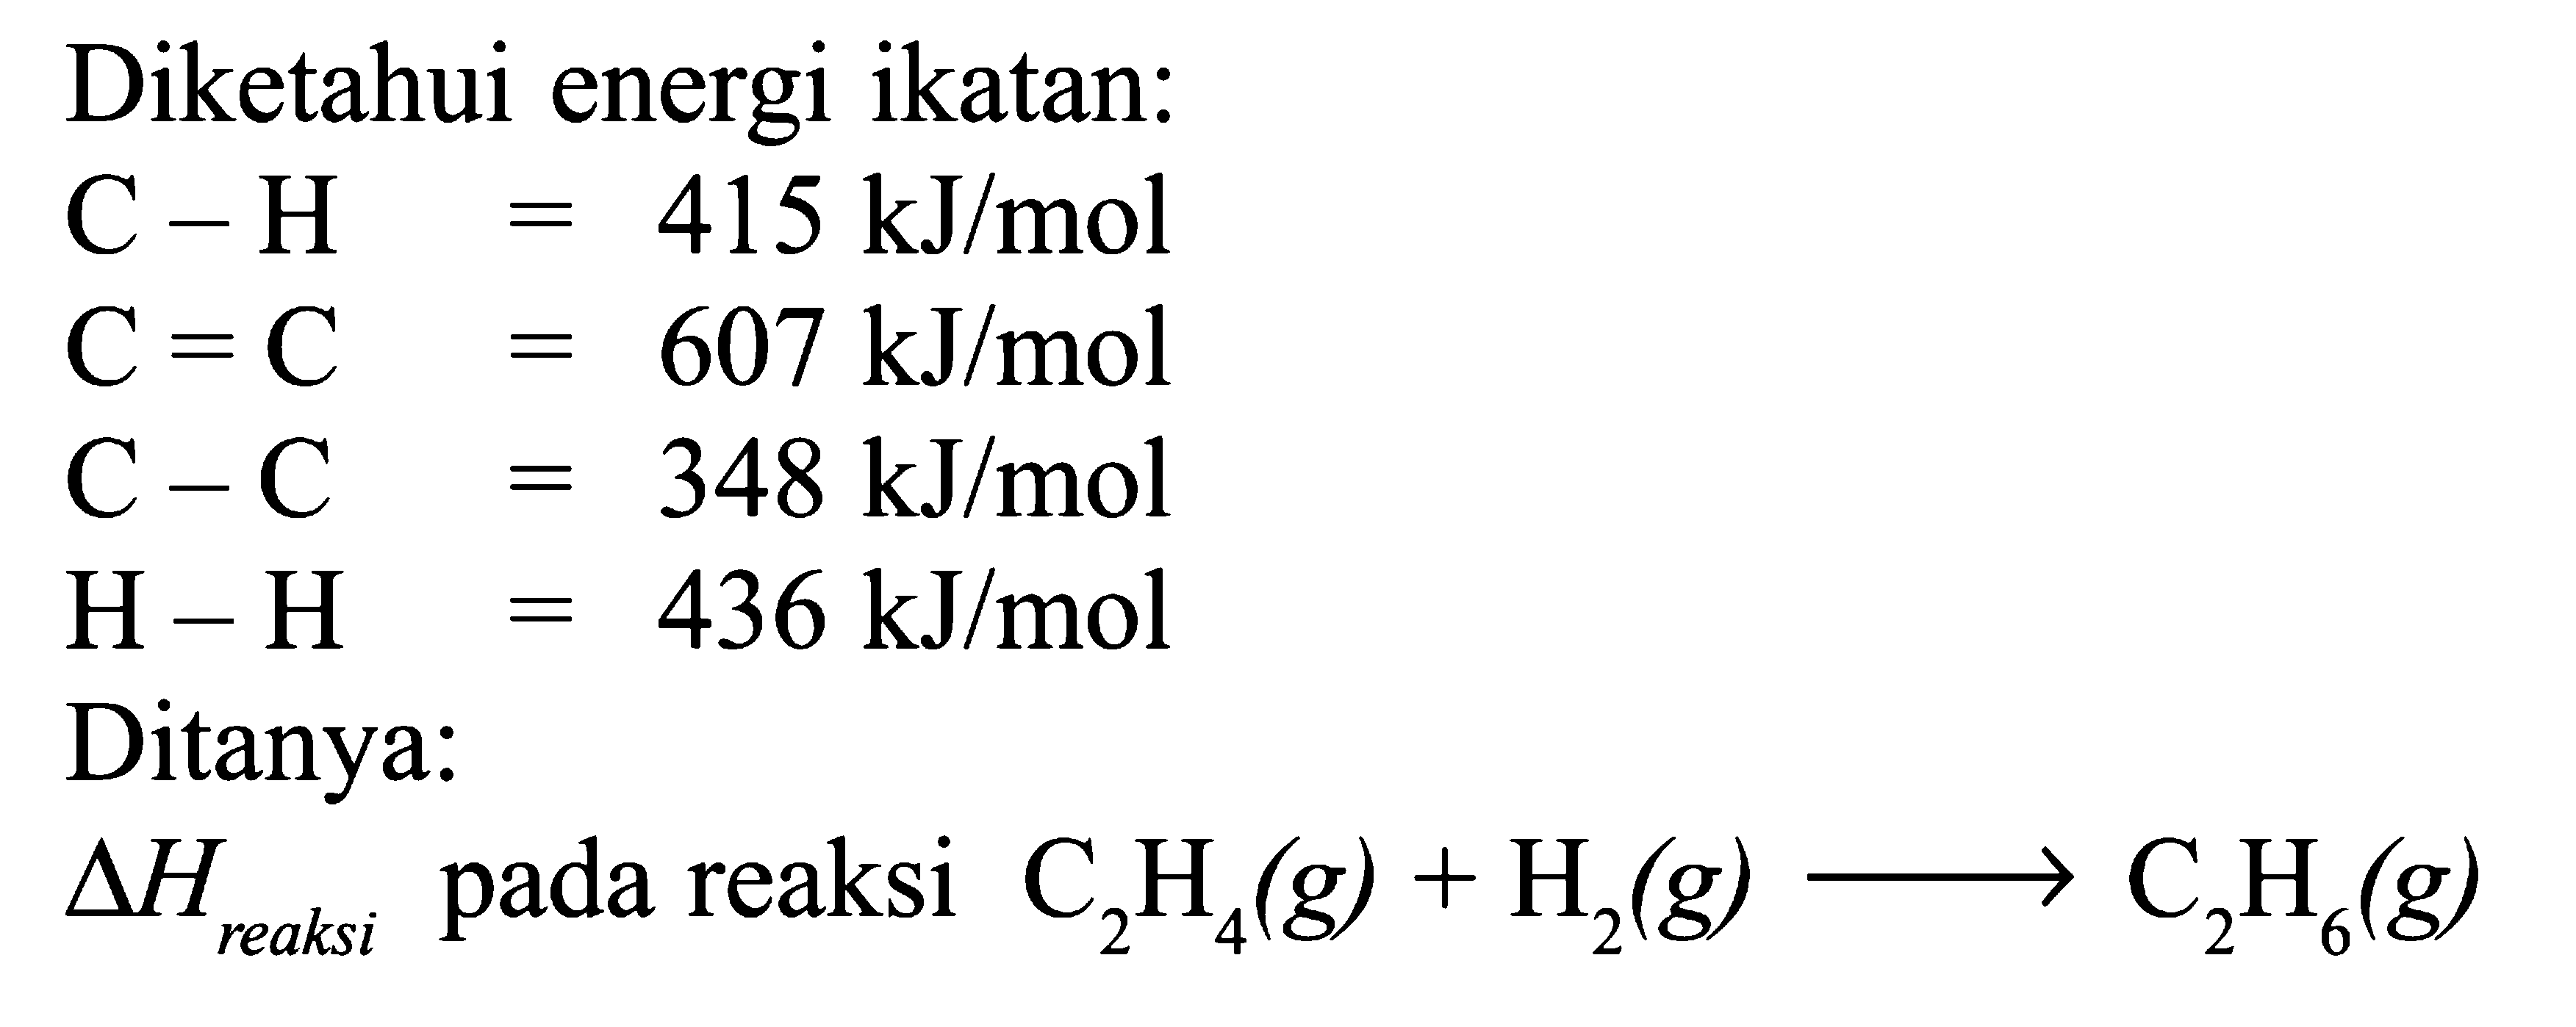 Diketahui energi ikatan: C - H = 415 kJ/mol C = C = 607 kJ/mol C - C = 348 kJ/mol H - H = 436 kJ/mol Ditanya: delta H reaksi pada reaksi C2H4(g) + H2(g) -> C2H6(g)